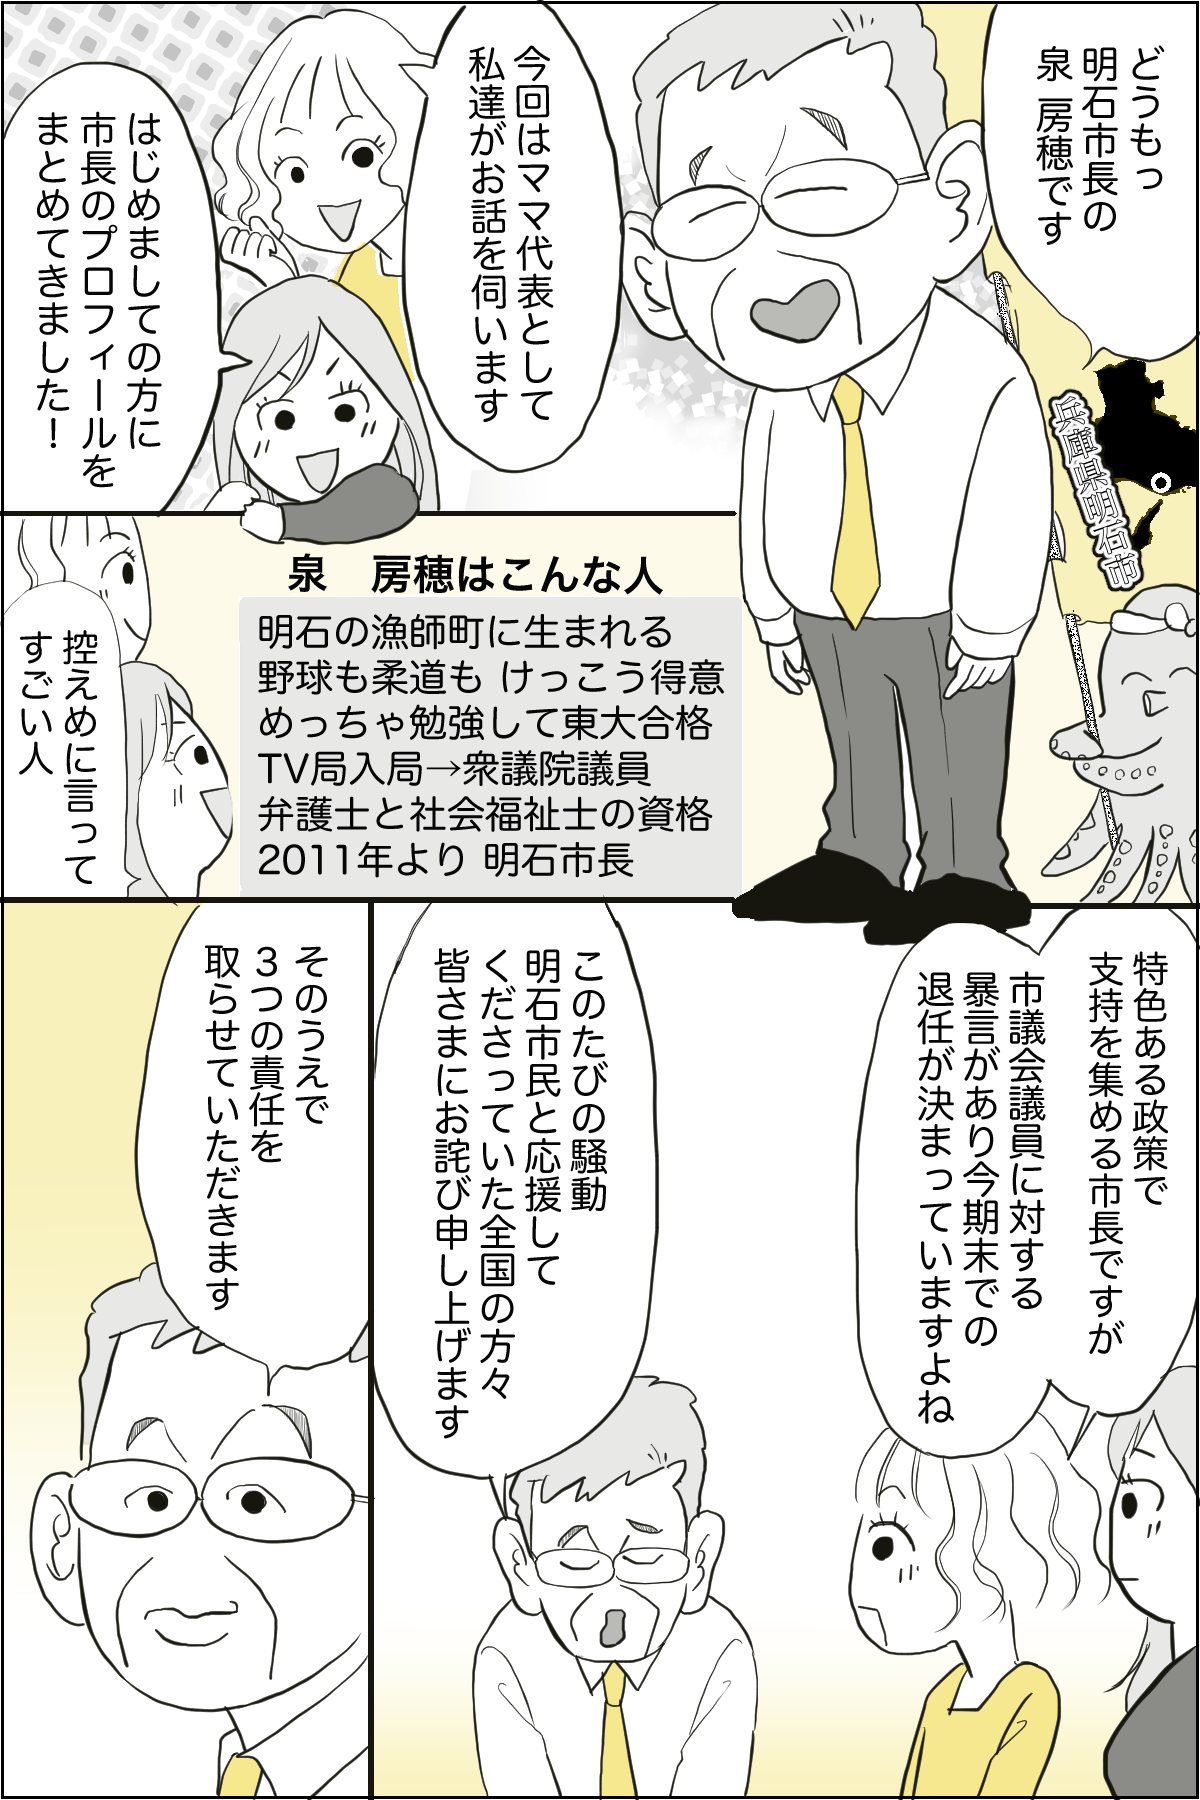 泉市長記事漫画化_出力_001